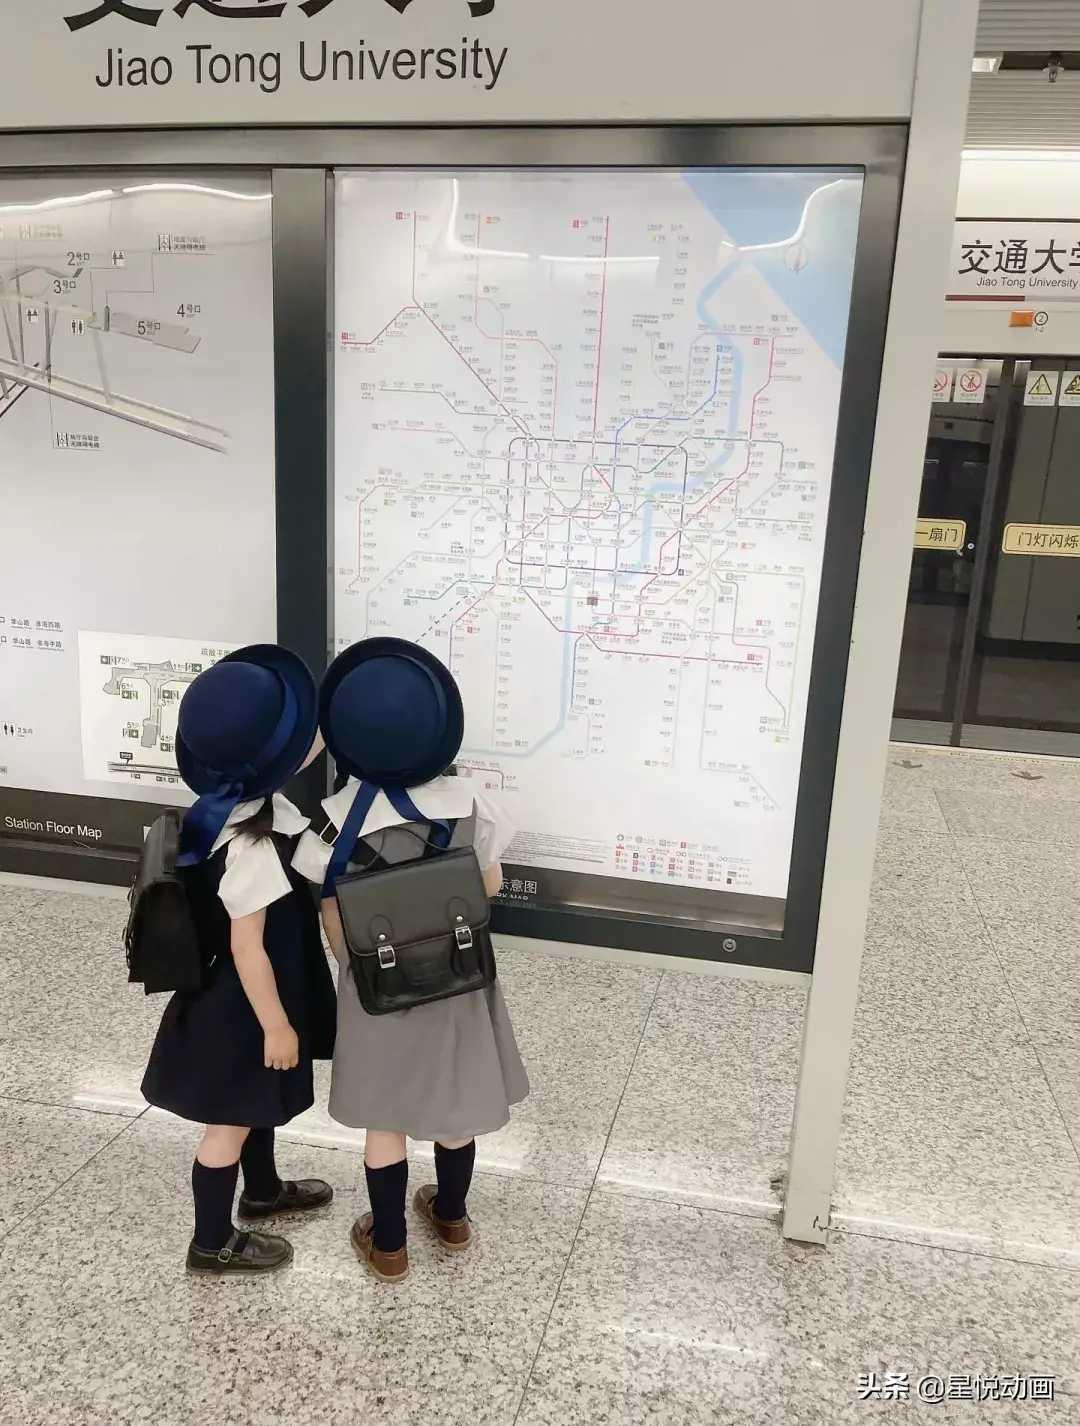 地铁里的可爱小妹妹[送心]‖像极了小丸子和小玉-图1